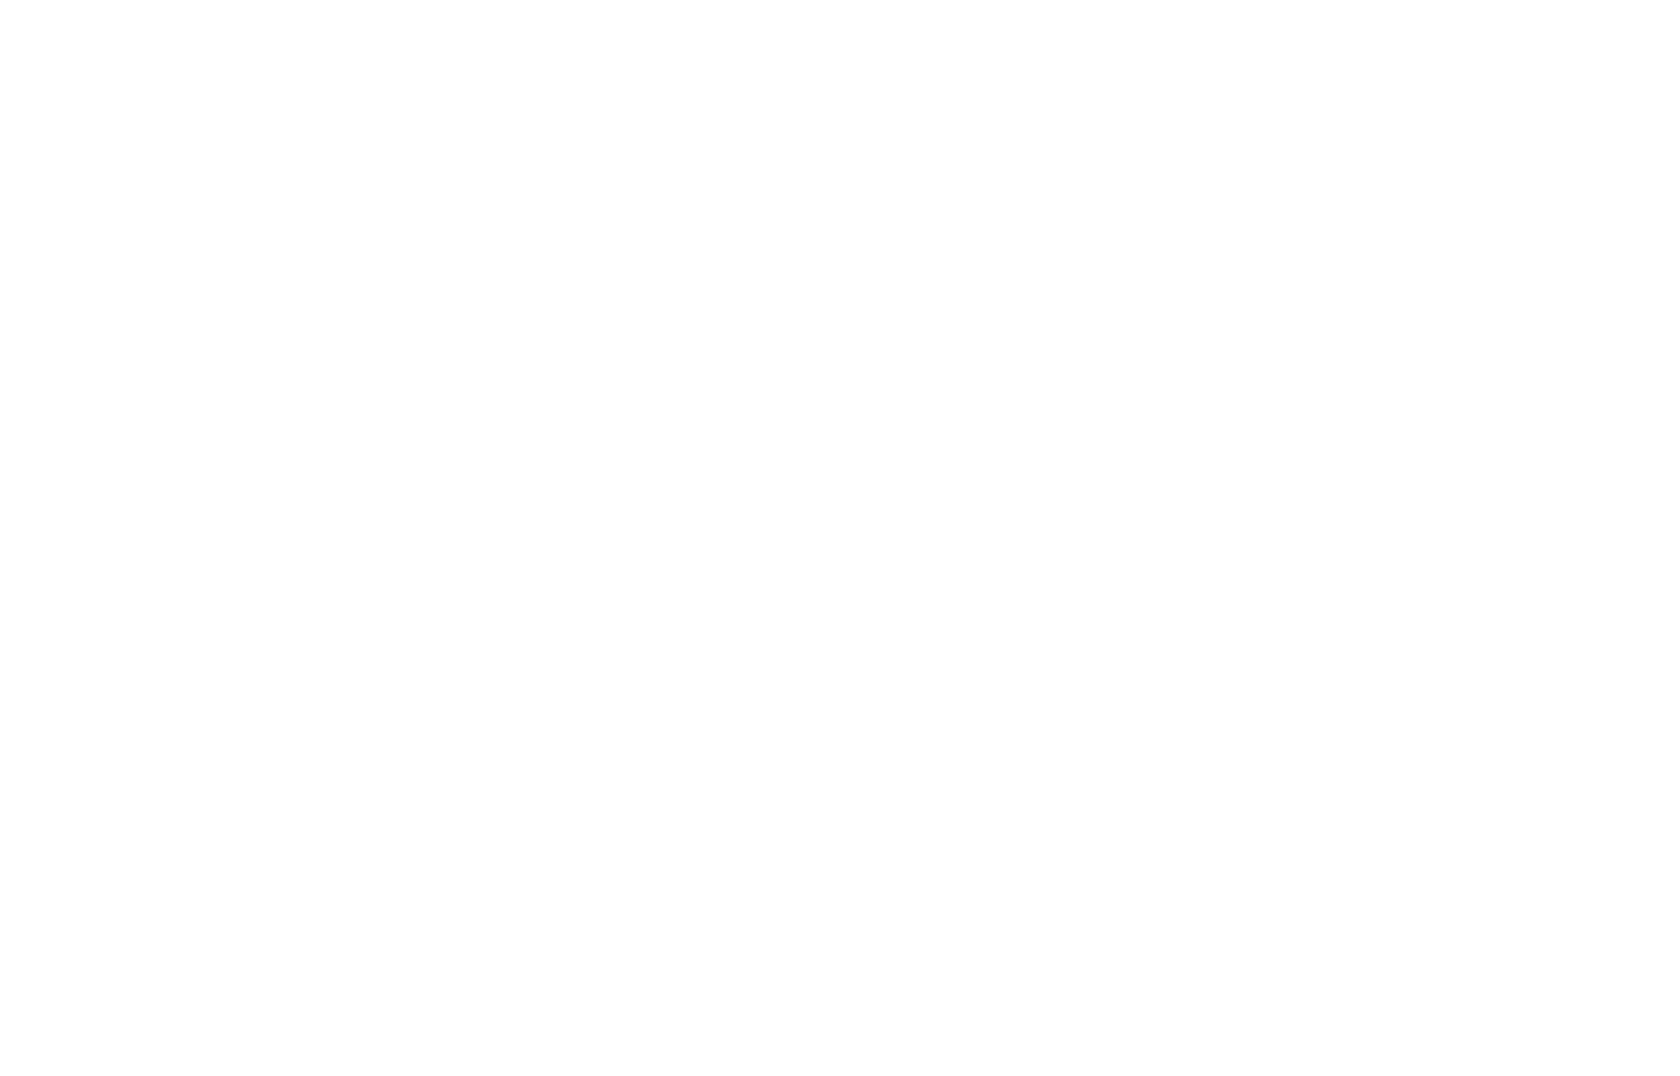 Логотип для морепродуктов Океан ТРК, название бренда с изображением продукта, кальмар - вид сверху | Джекил и Хайд